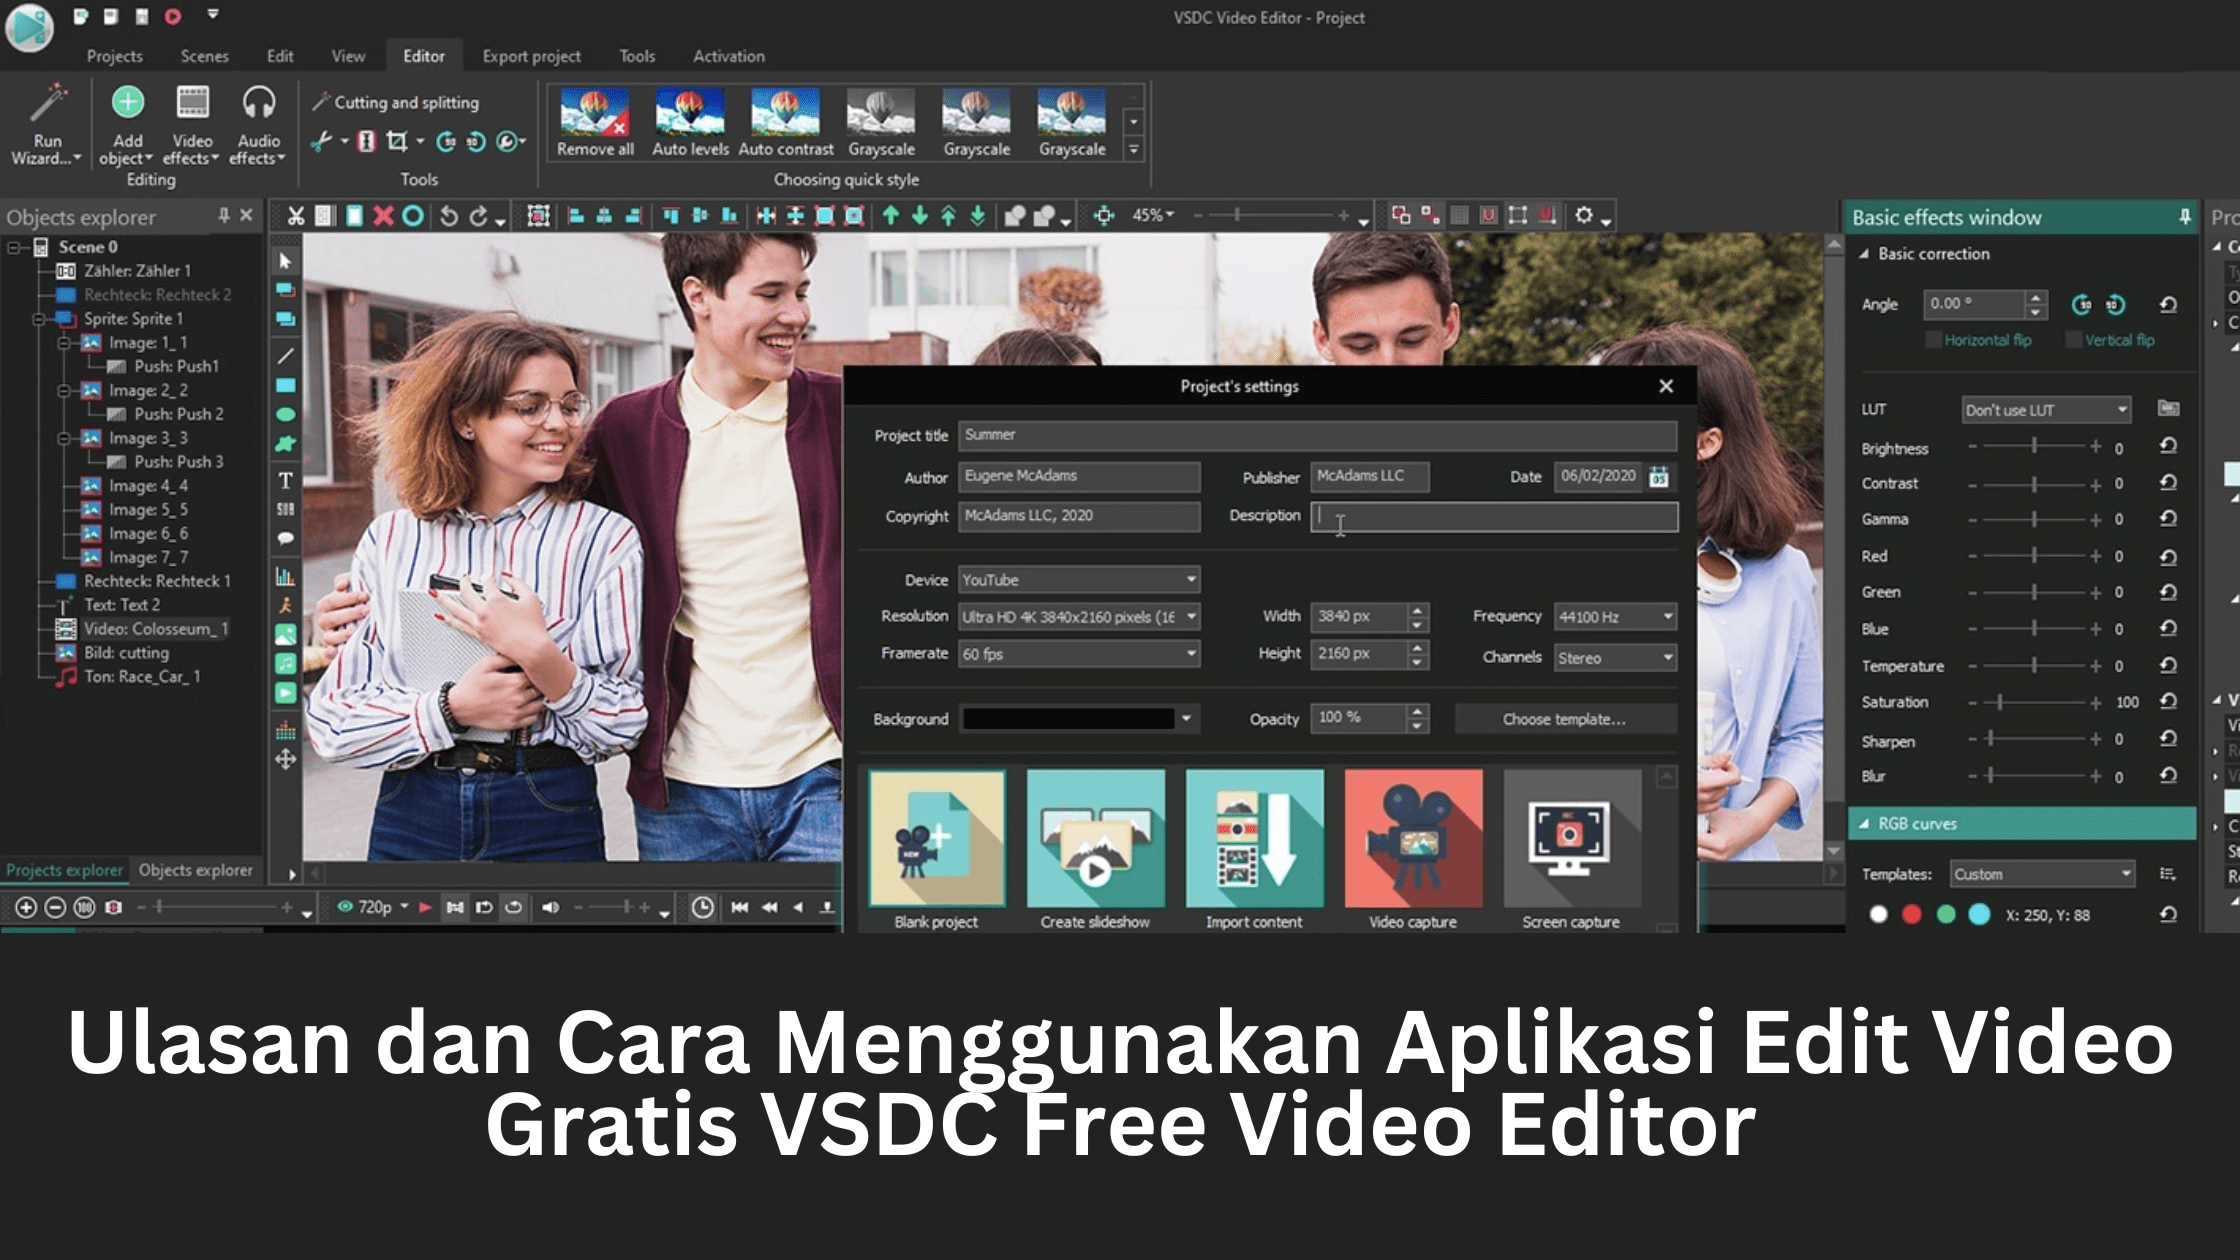 Ulasan dan Cara Menggunakan Aplikasi Edit Video Gratis VSDC Free Video Editor